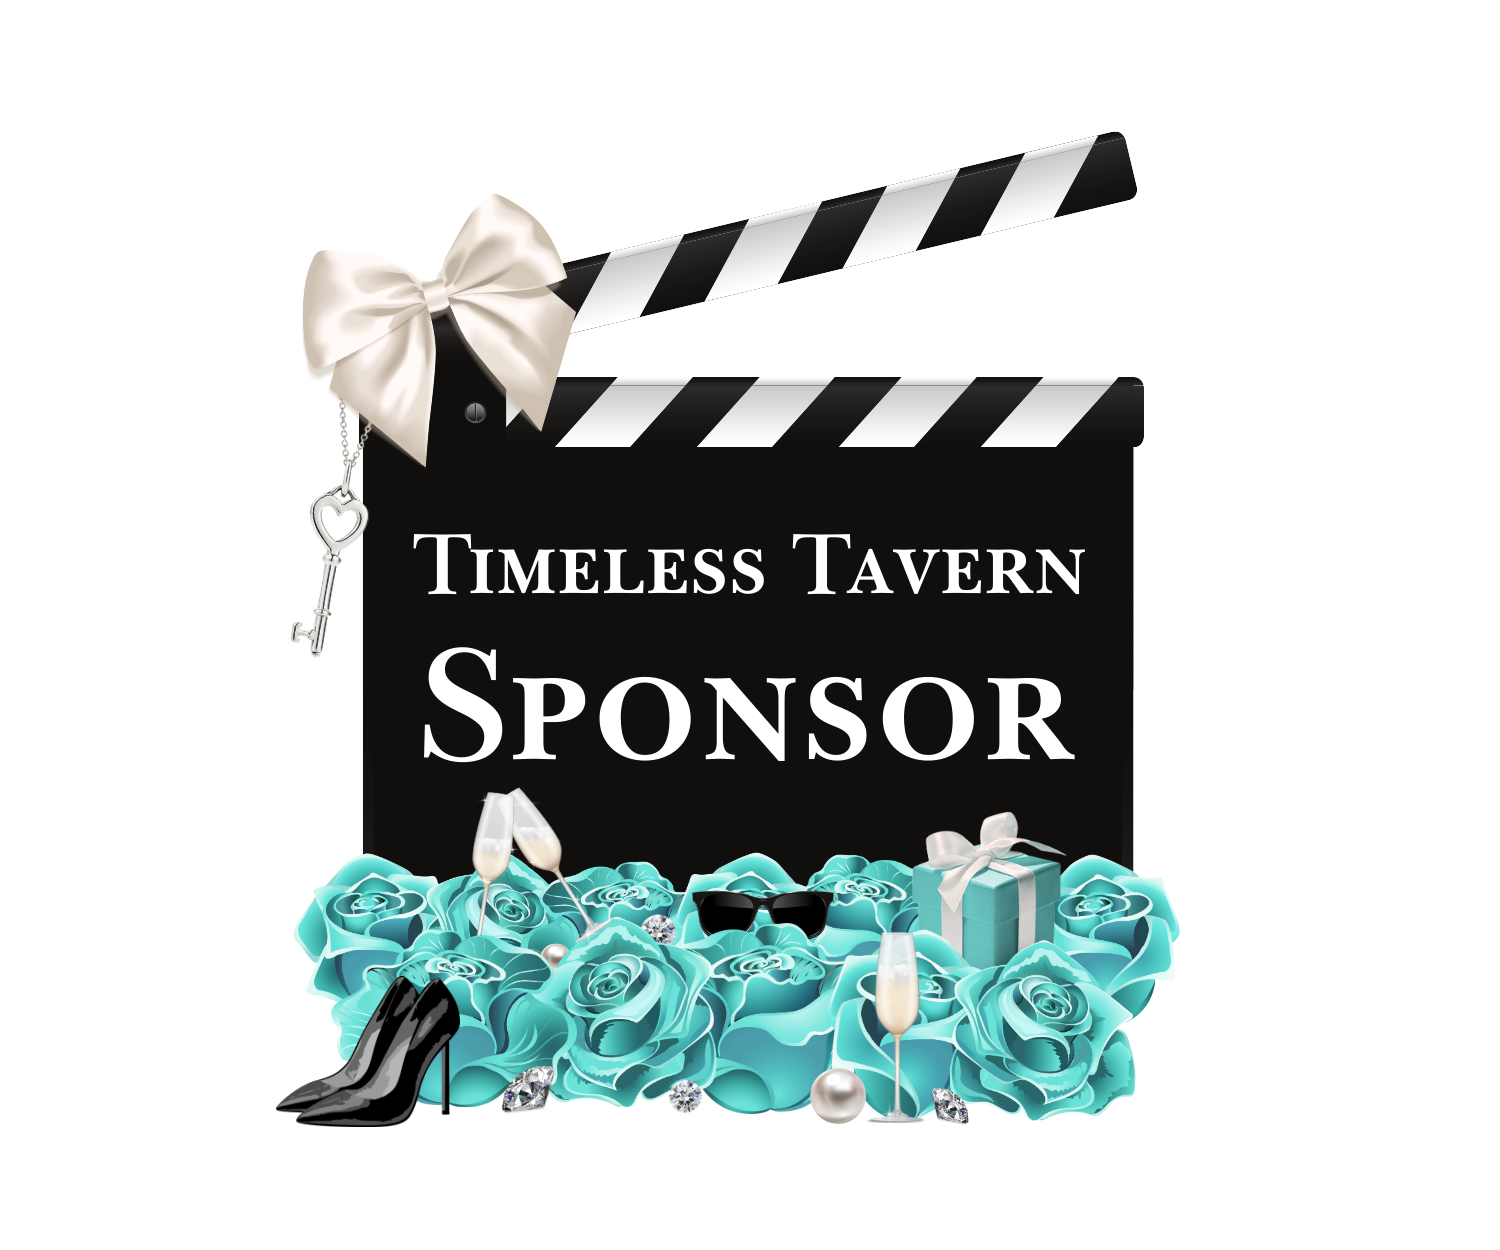 Timeless Tavern Sponsor